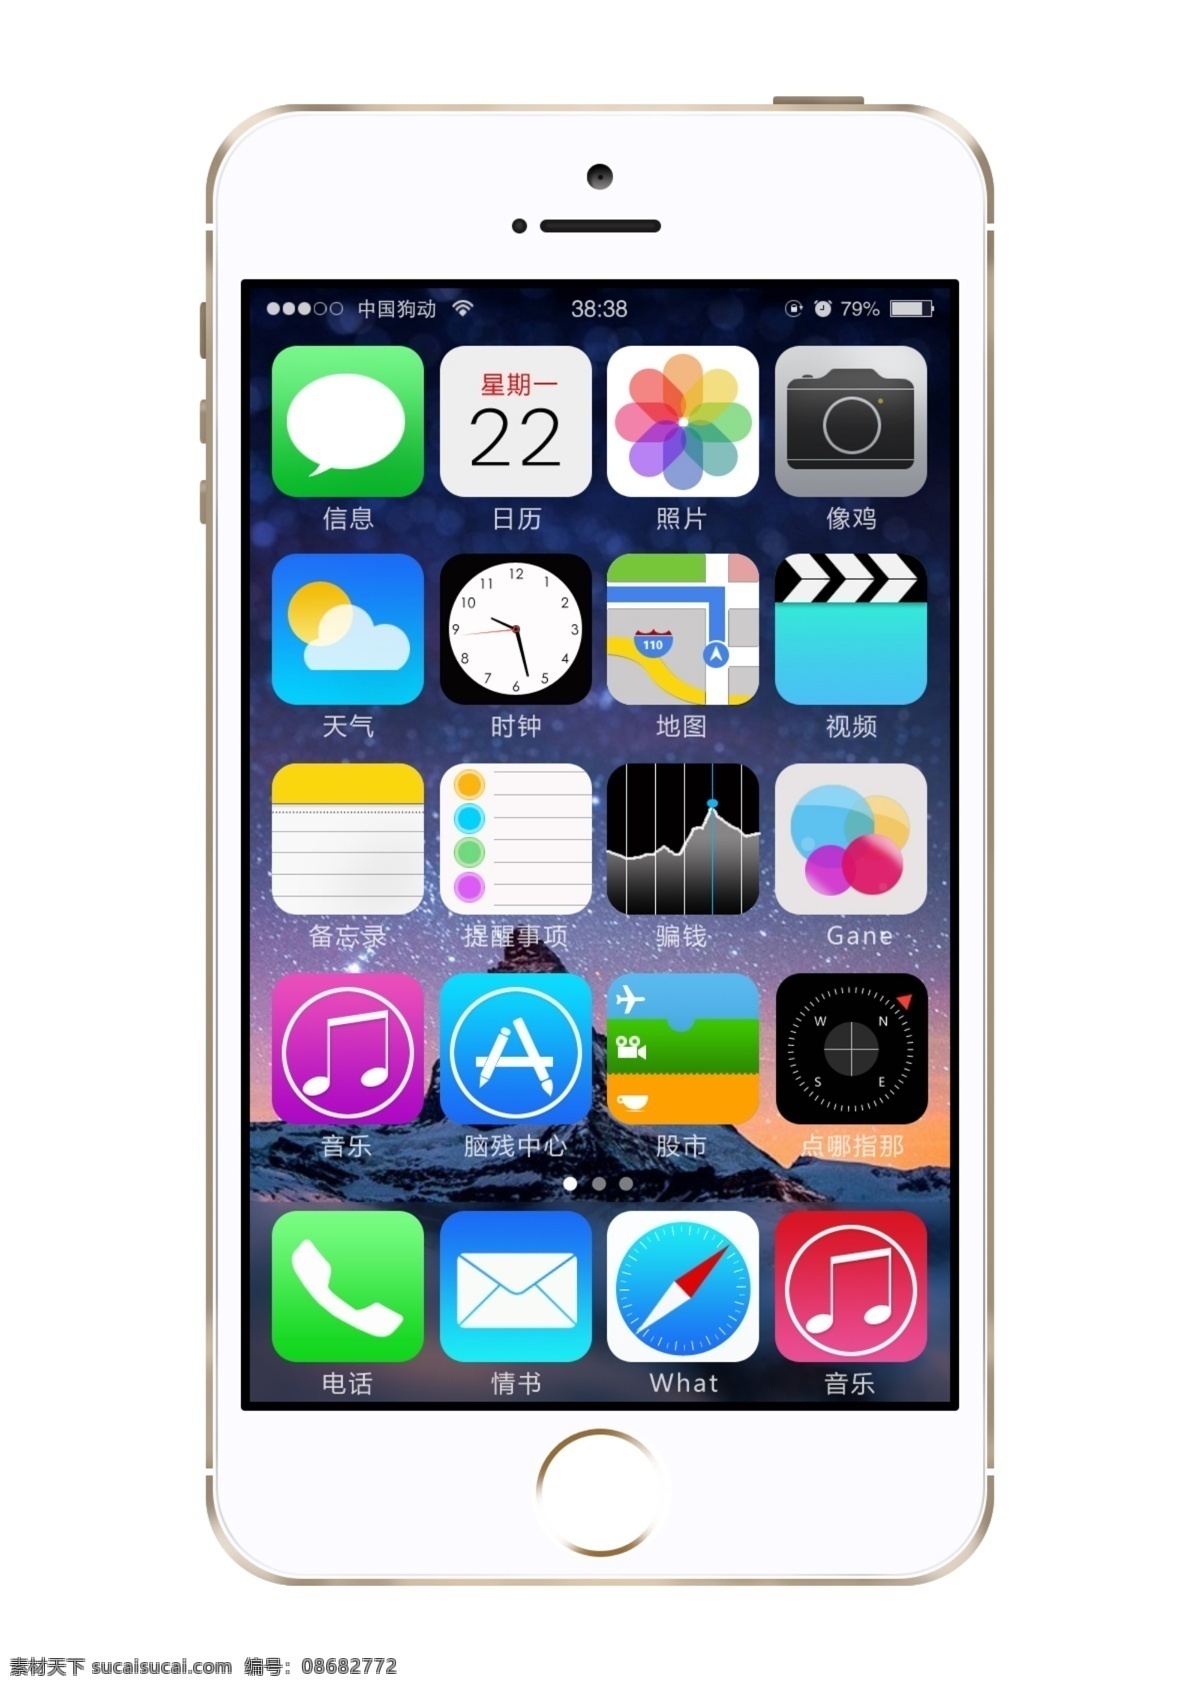 iphone 苹果 手机 5s 界面 界面设计 手机界面 iph 移动界面设计 ui设计 app